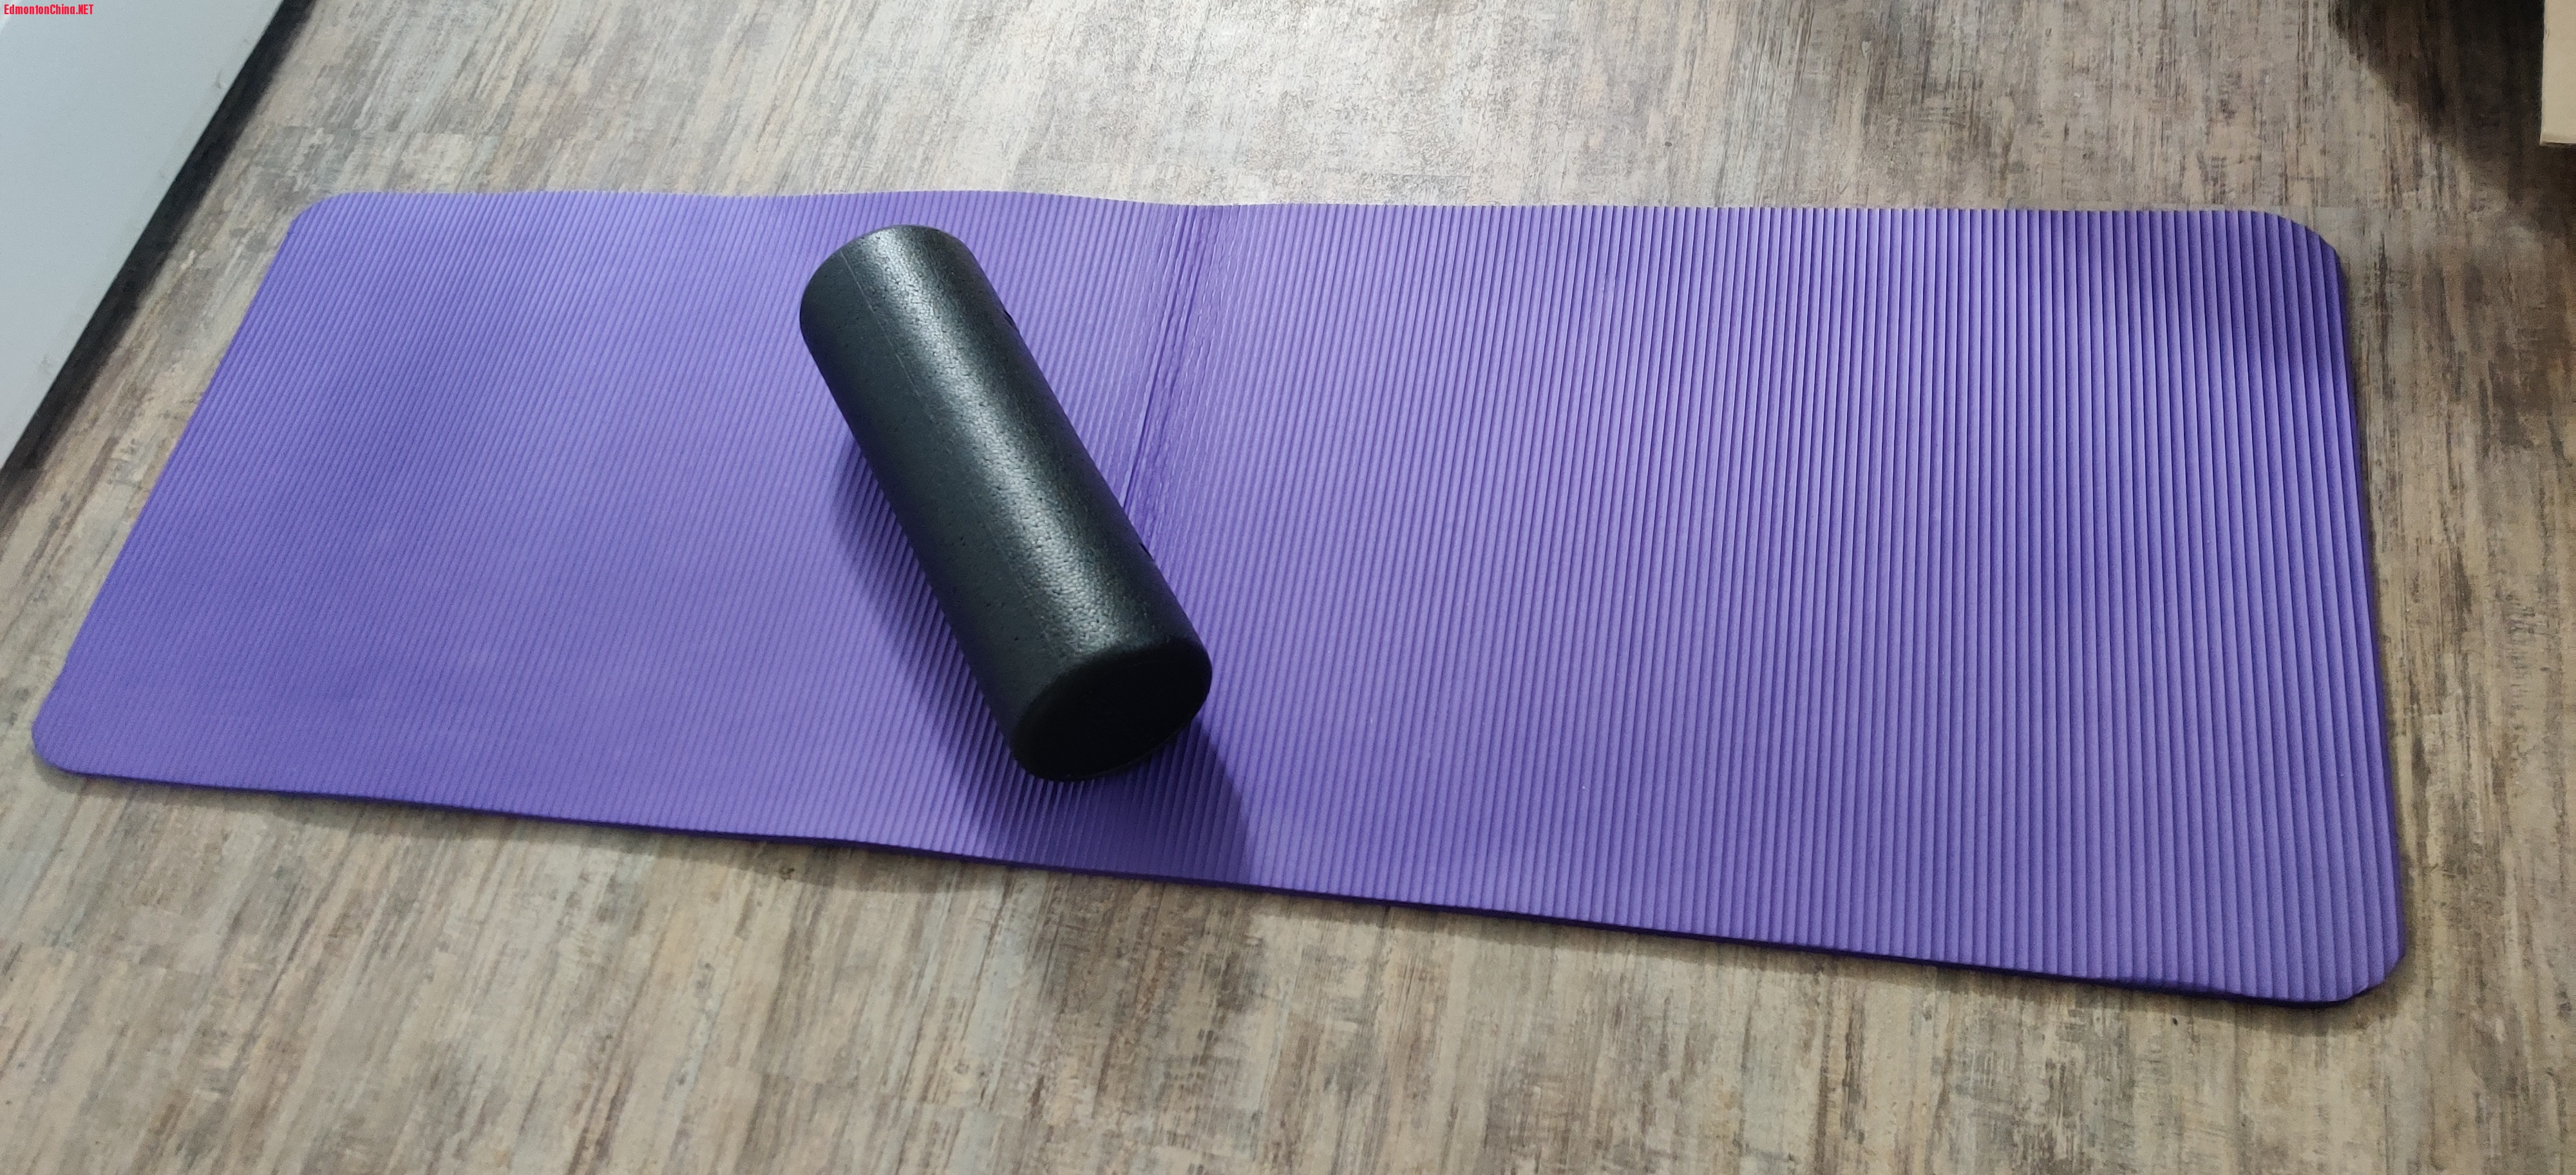 Yoga mat + Roller foam